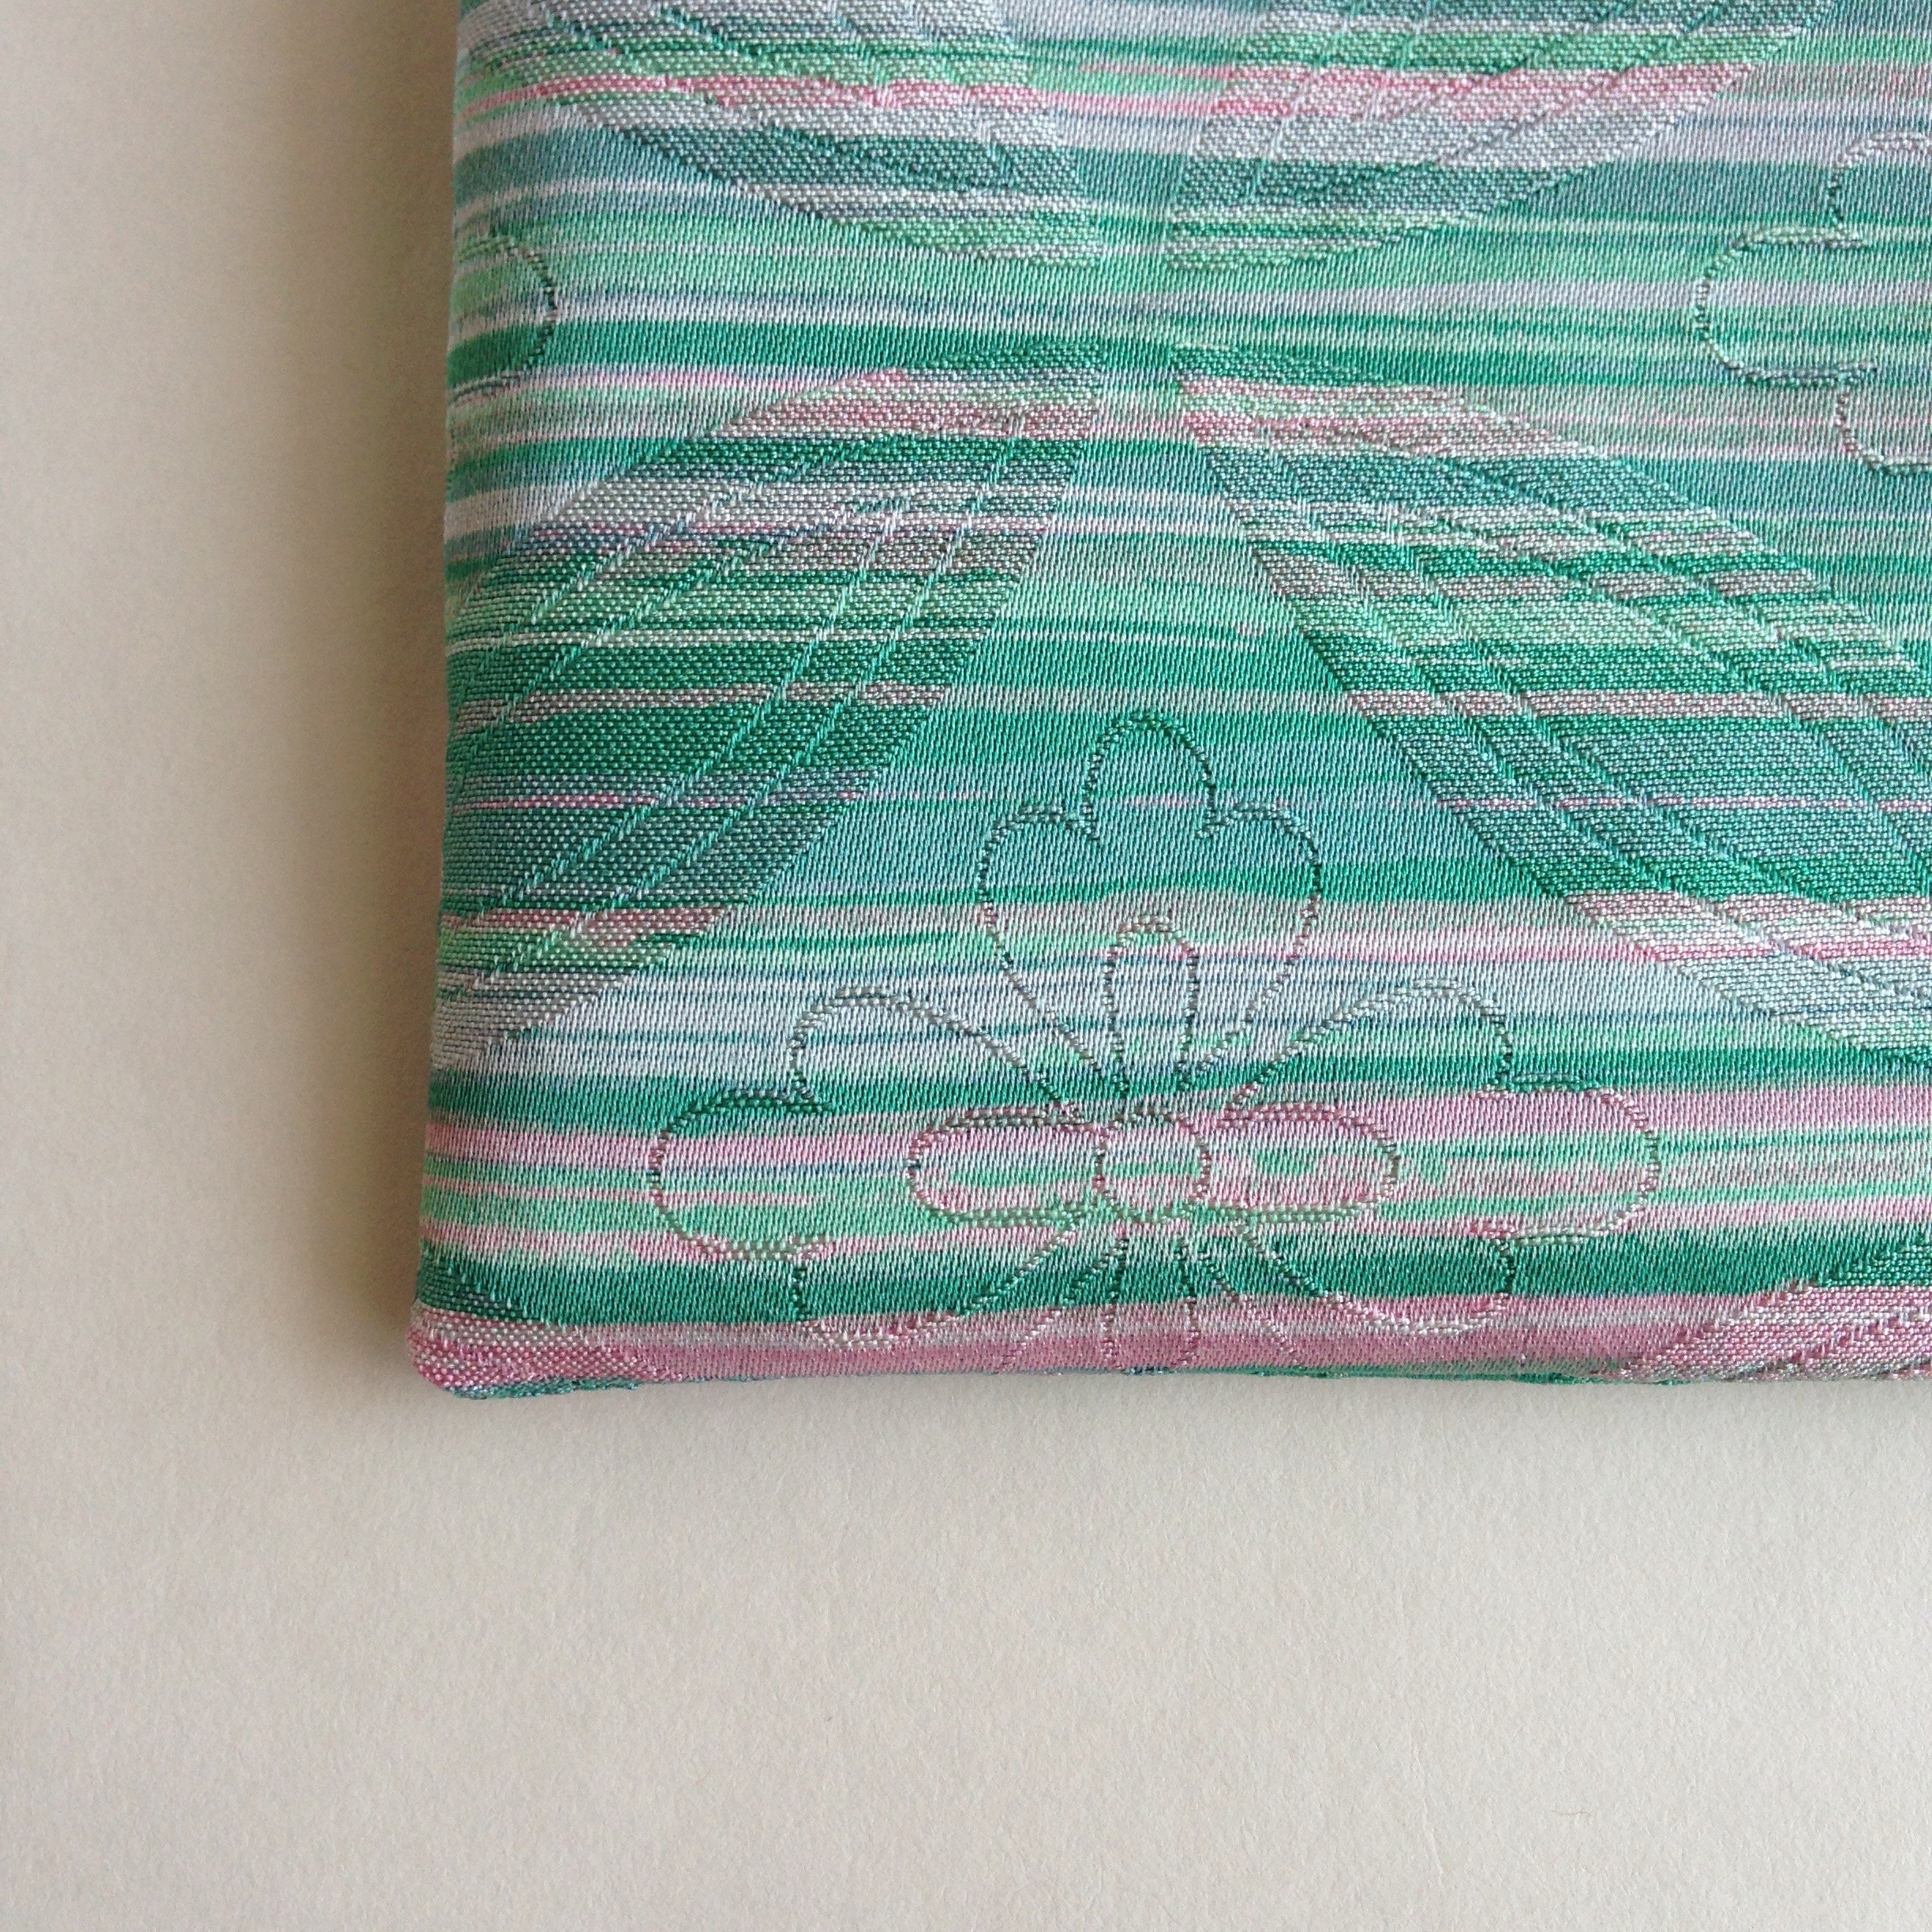 絹手染ポーチ 11cm 12 5cm 横 緑ピンク Iichi ハンドメイド クラフト作品 手仕事品の通販